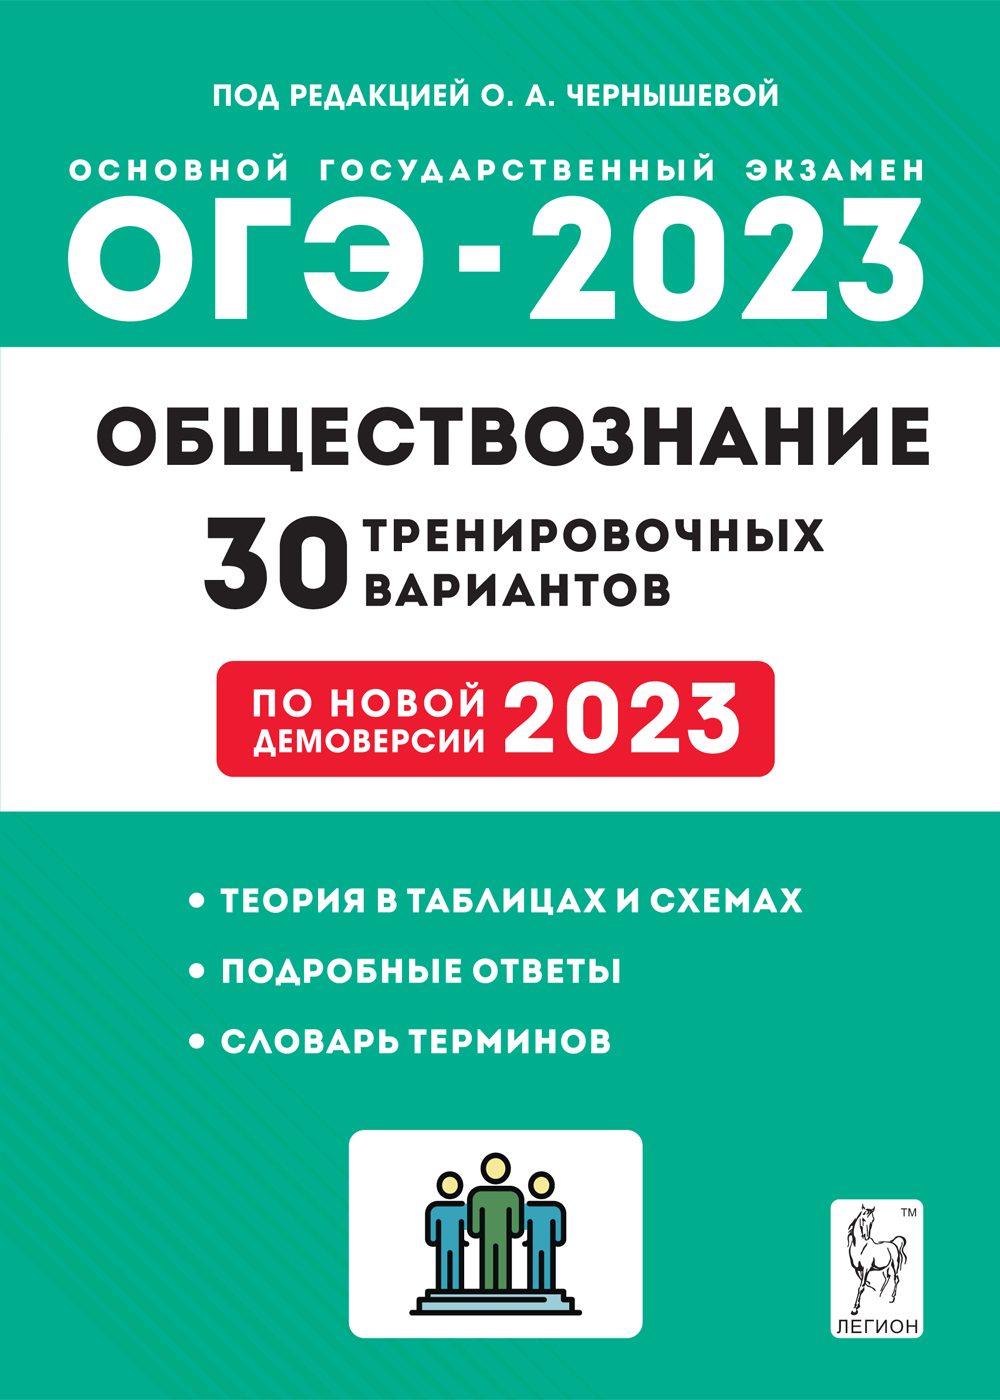 ОГЭ-2023. Обществознание. 30 тренировочных вариантов по демоверсии 2023 год